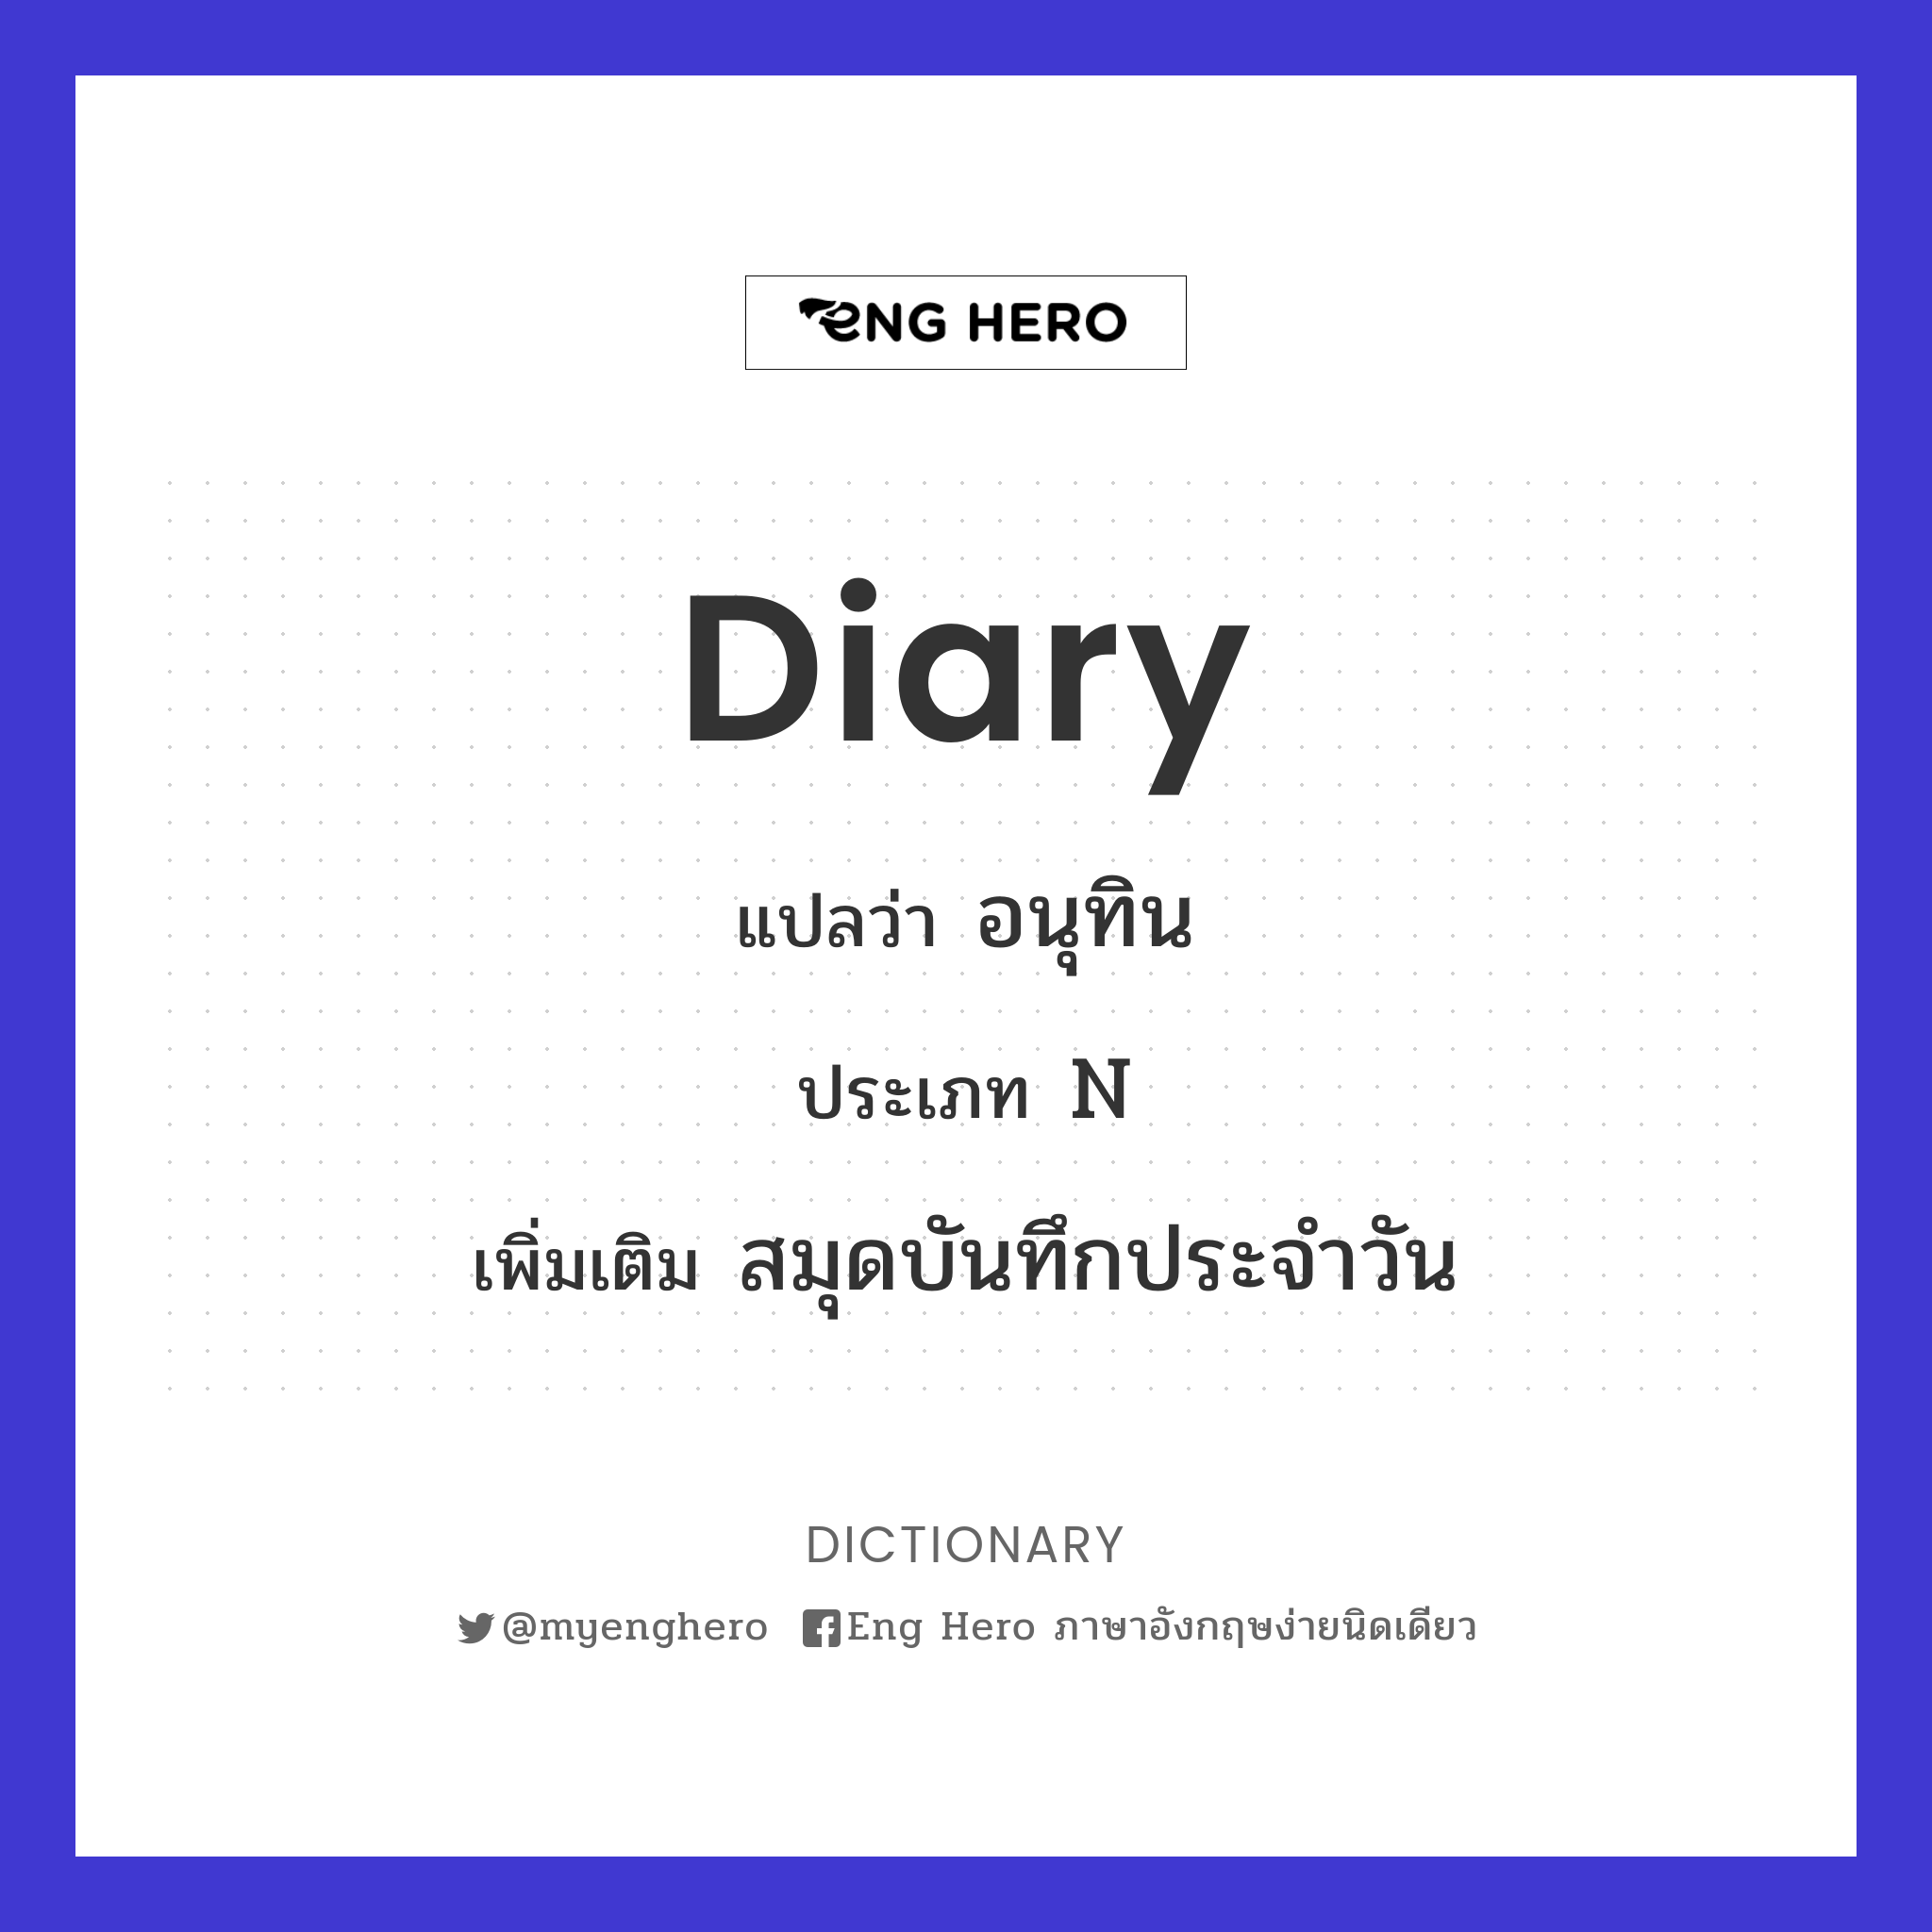 diary